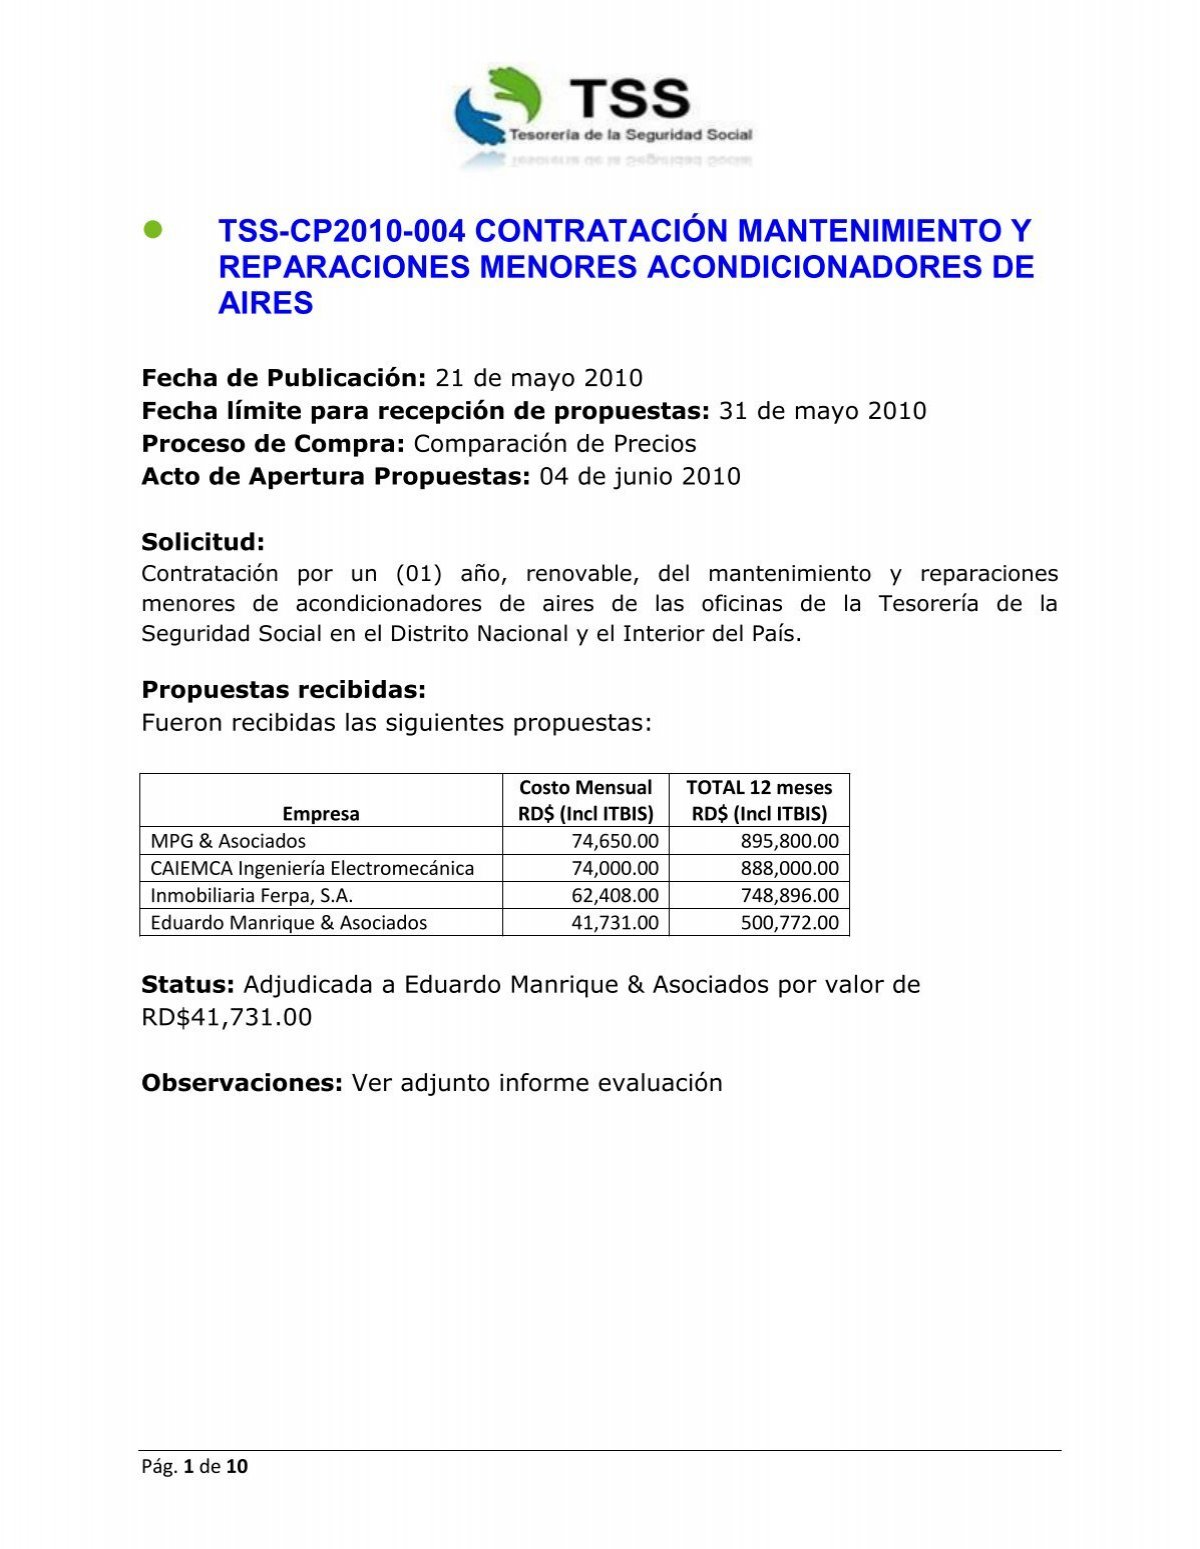 CP2010-004 Mantenimiento acondicionadores de aire - TSS